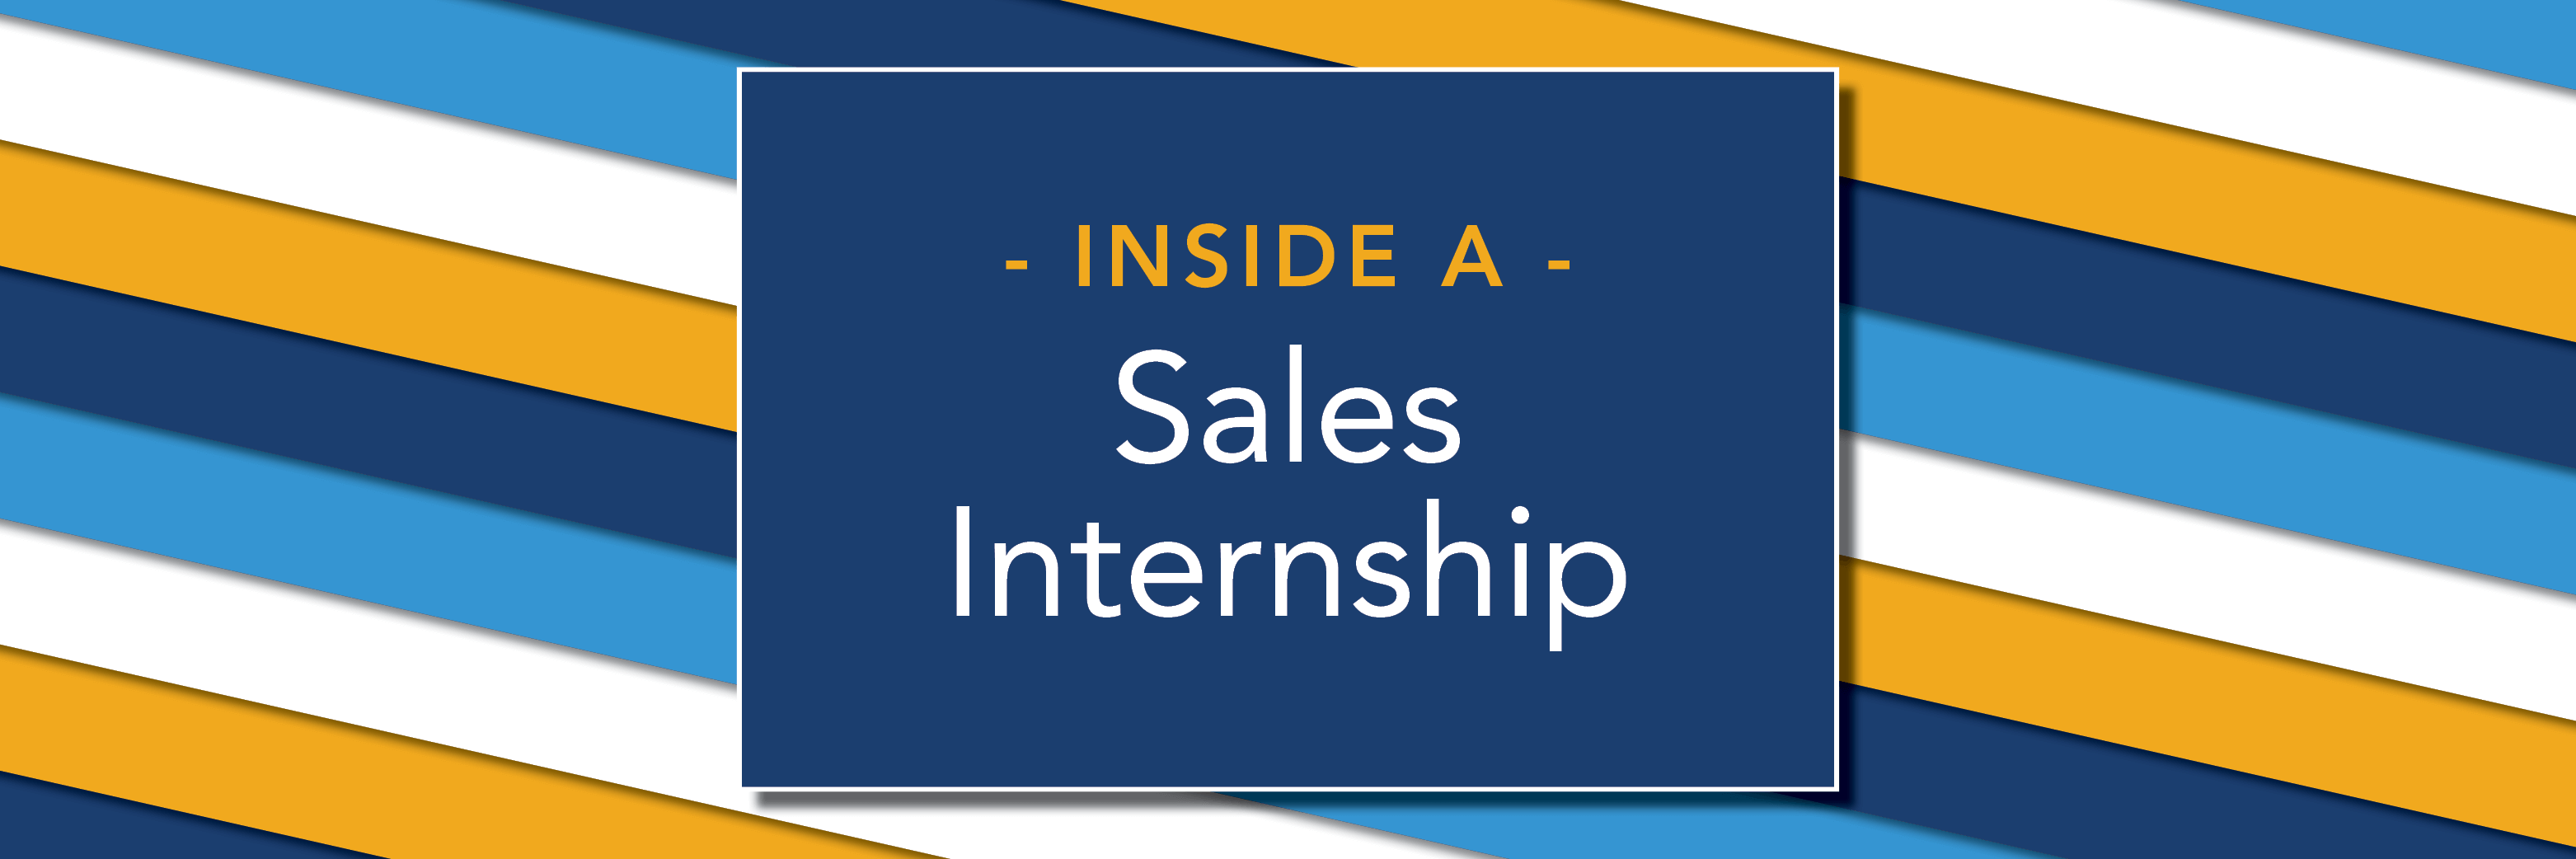 Inside a Sales Internship at GreatAmerica